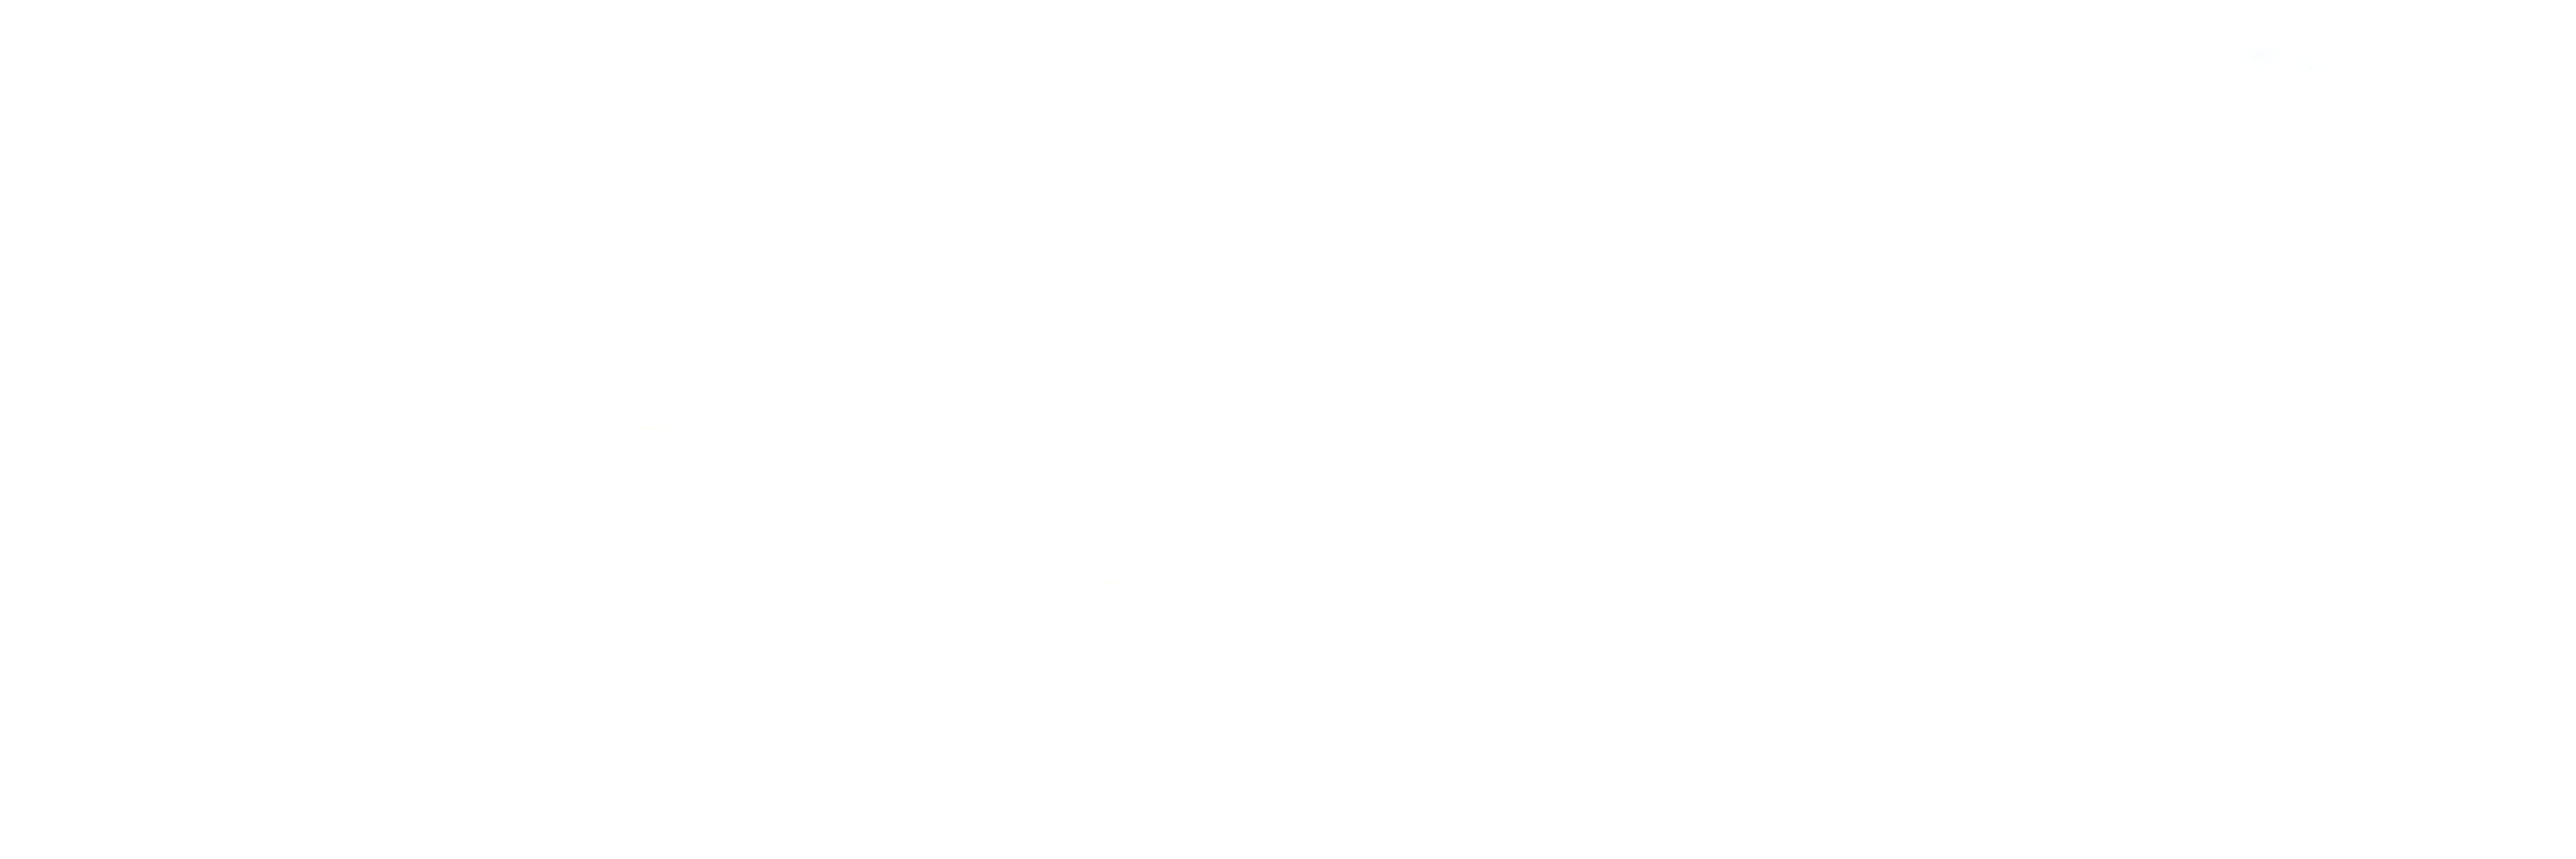 Colegio Maria Auxiliadora – Torrent